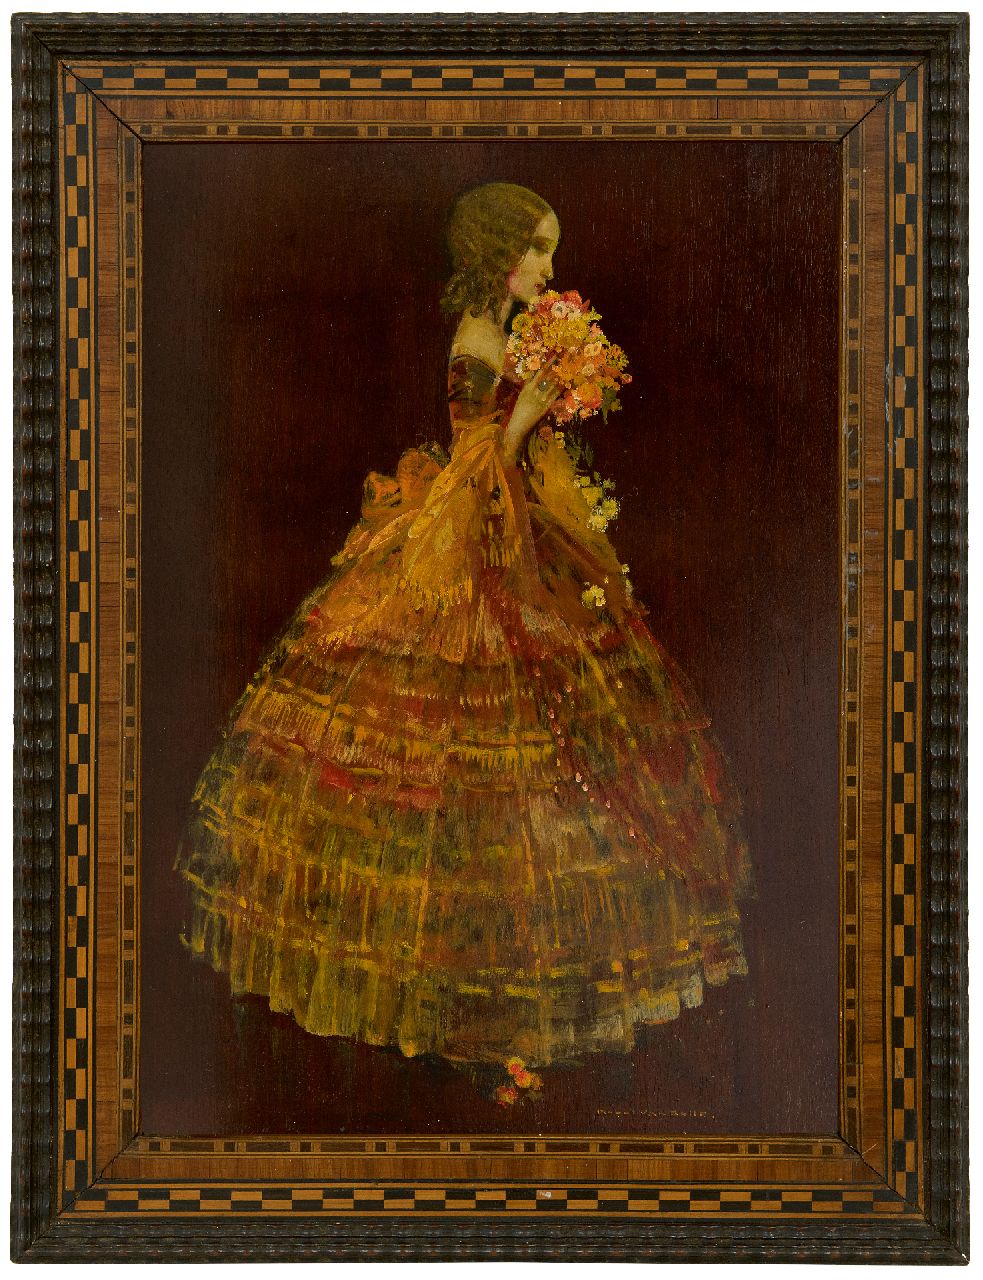 Belle K. van | Karel van Belle | Schilderijen te koop aangeboden | Vrouw in gele baljurk, olieverf op paneel 41,8 x 29,6 cm, gesigneerd rechtsonder